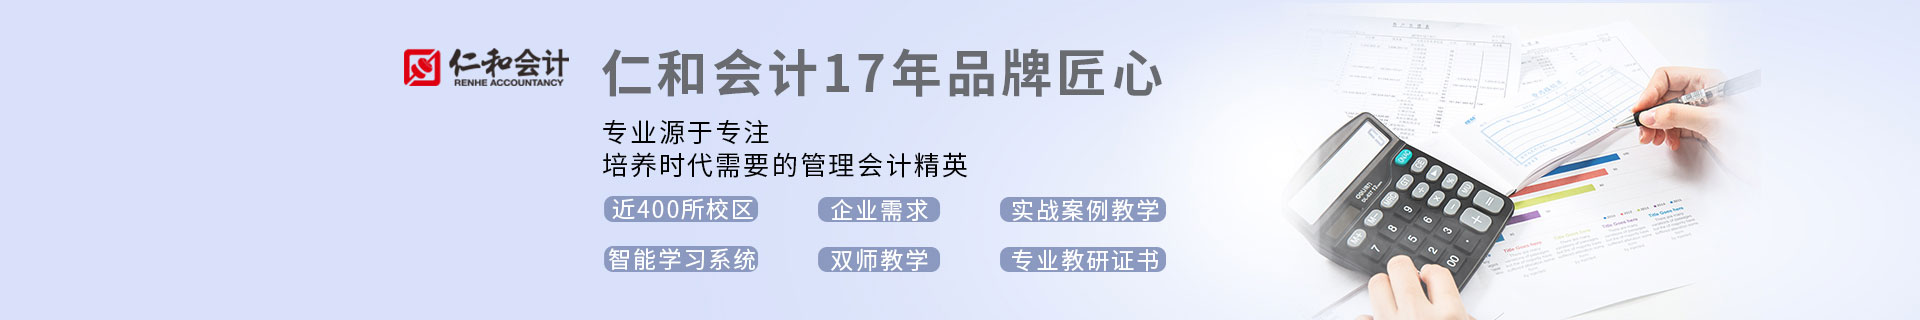 武汉东湖新技术开发区仁和会计培训机构